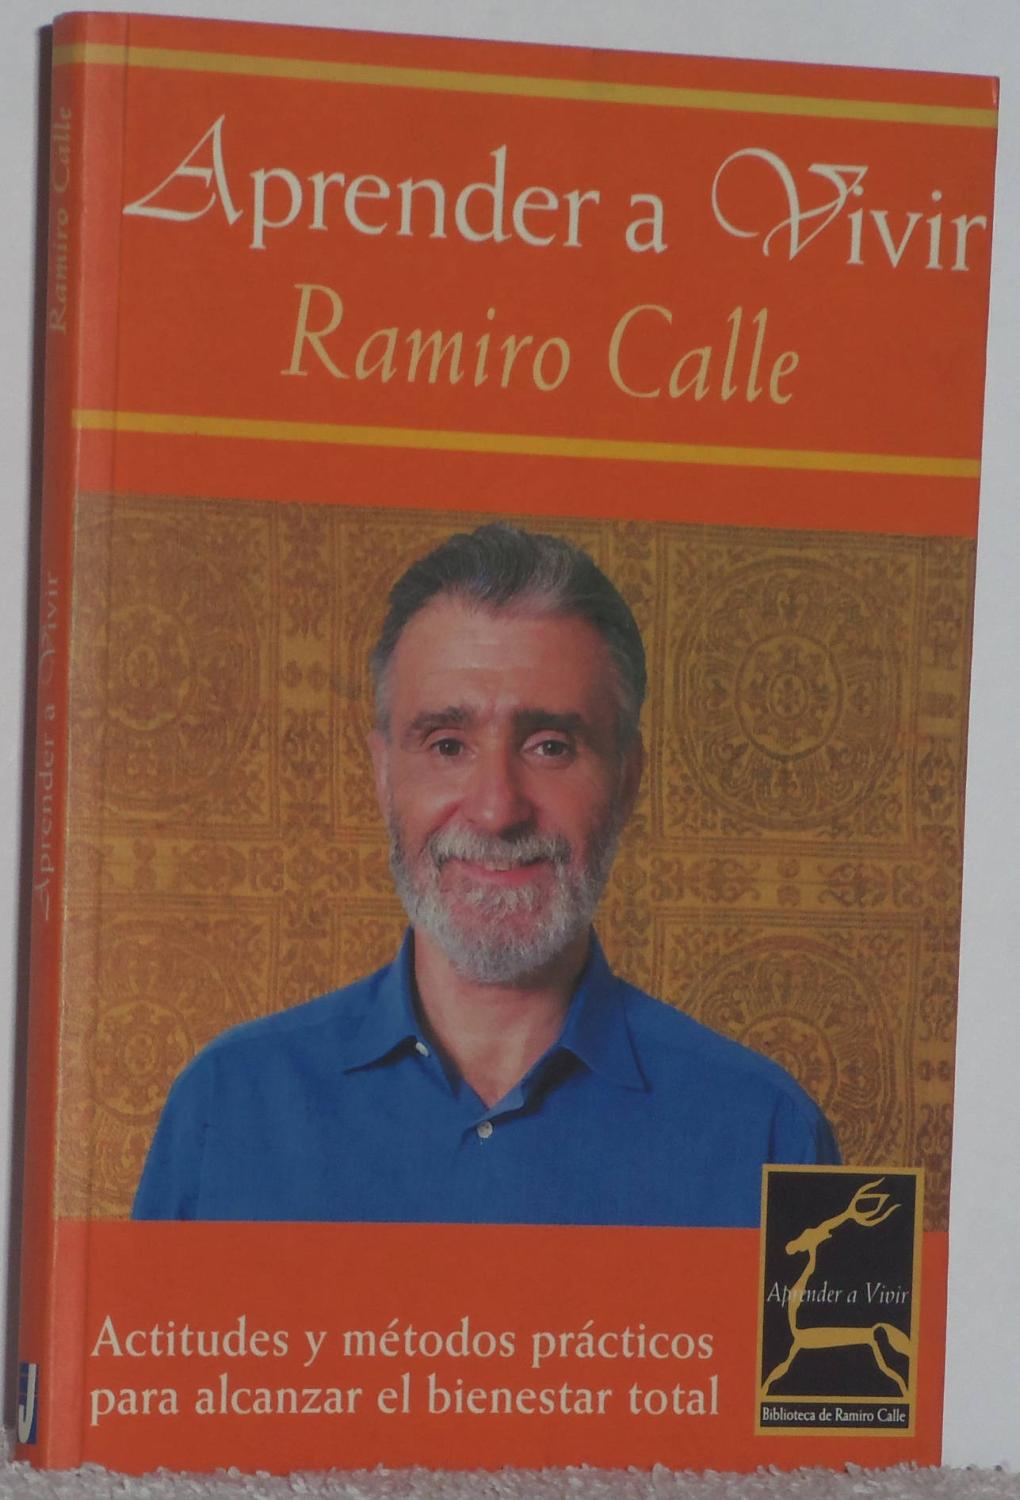 Aprender a vivir - Calle, Ramiro